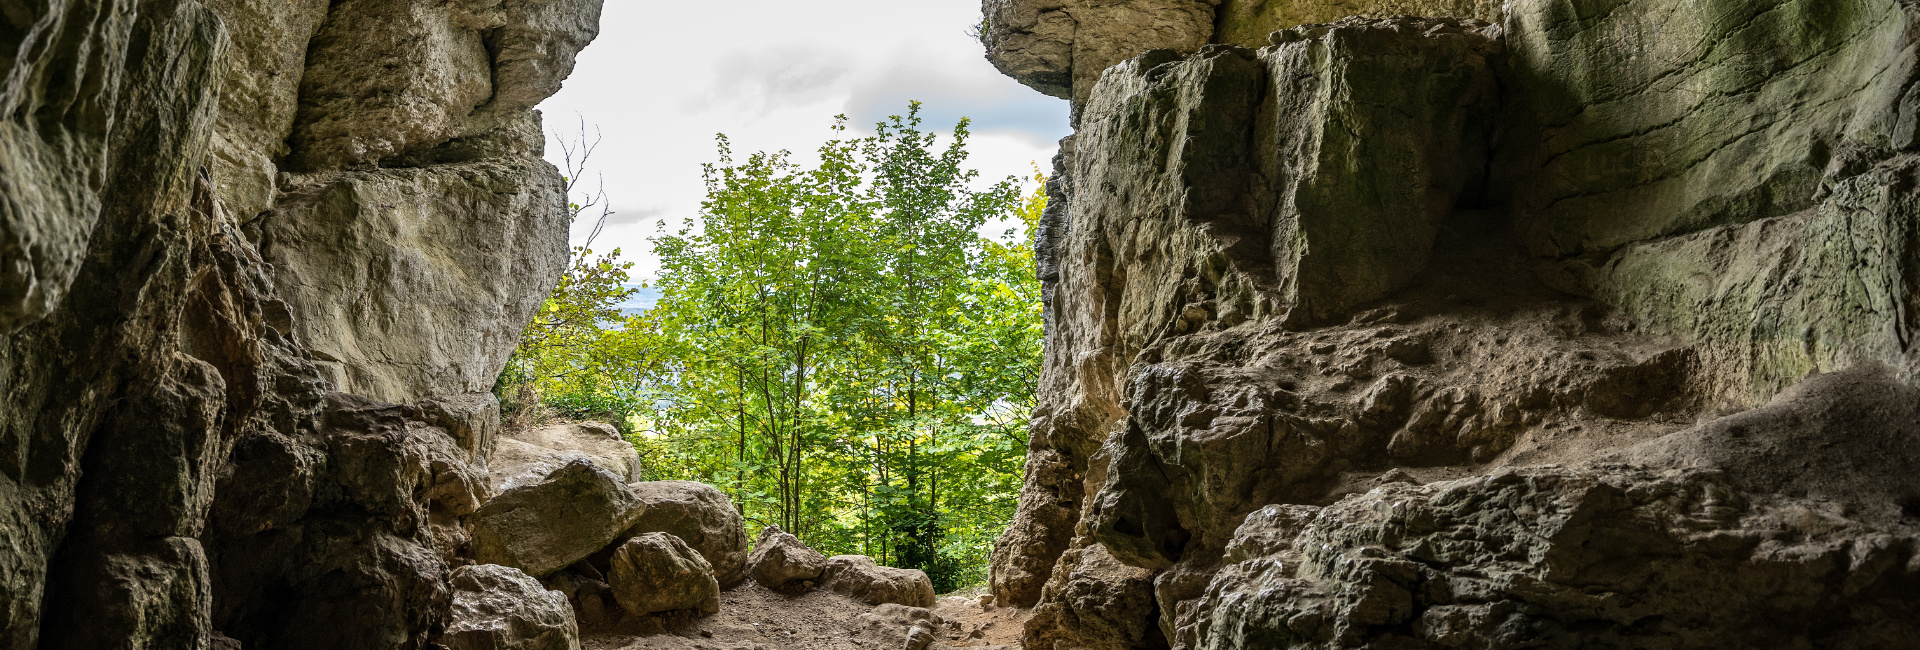 Blick auf Baumwipfel aus dem Sibyllenloch, einer Höhle im Teckberg der Schwäbischen Alb.